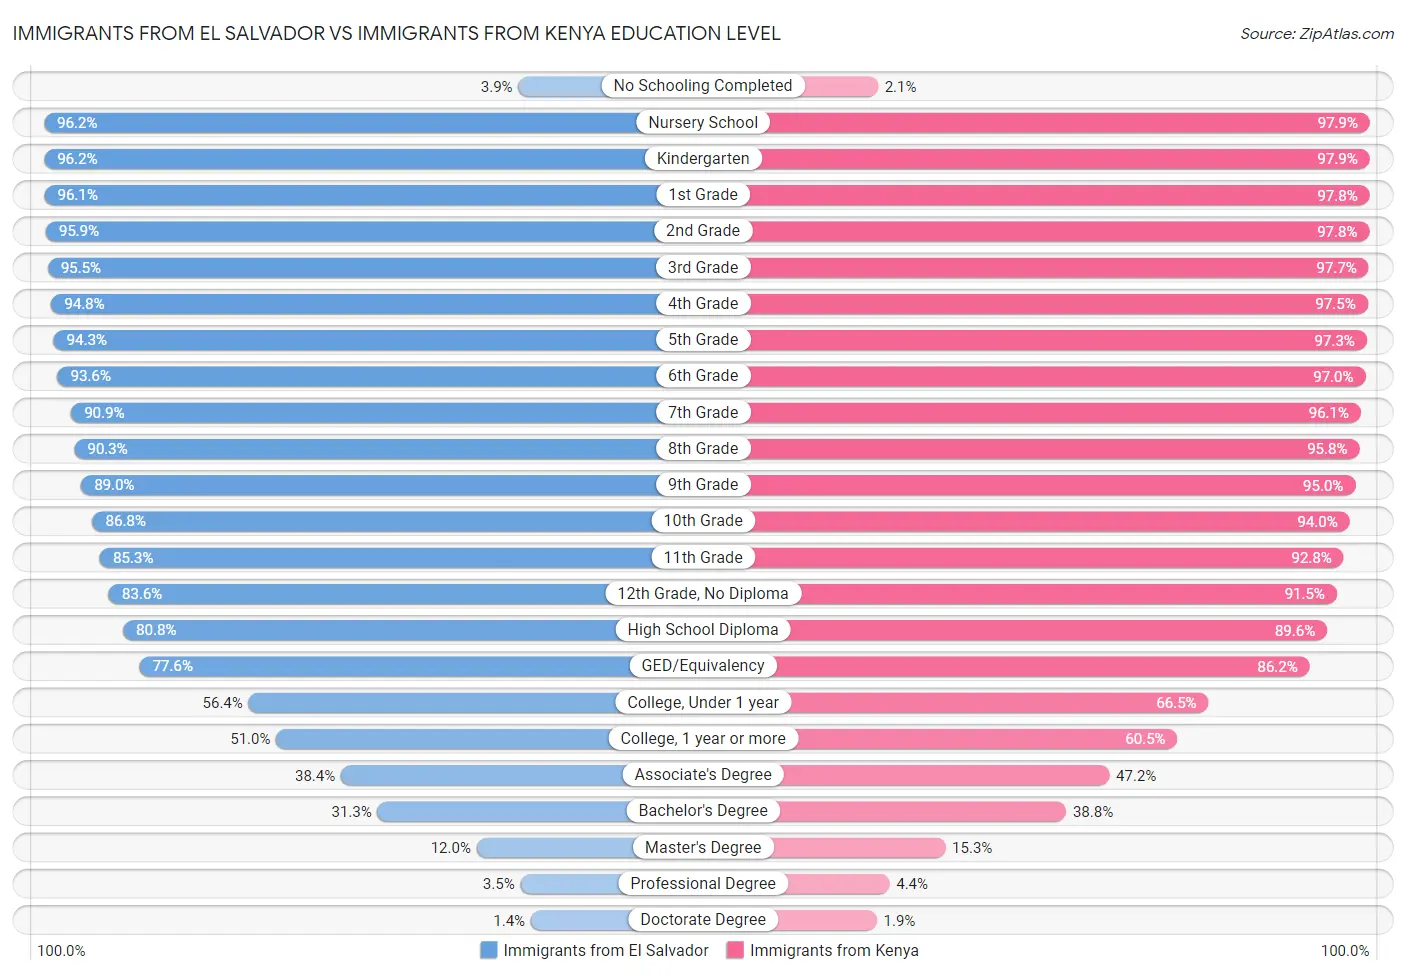 Immigrants from El Salvador vs Immigrants from Kenya Education Level